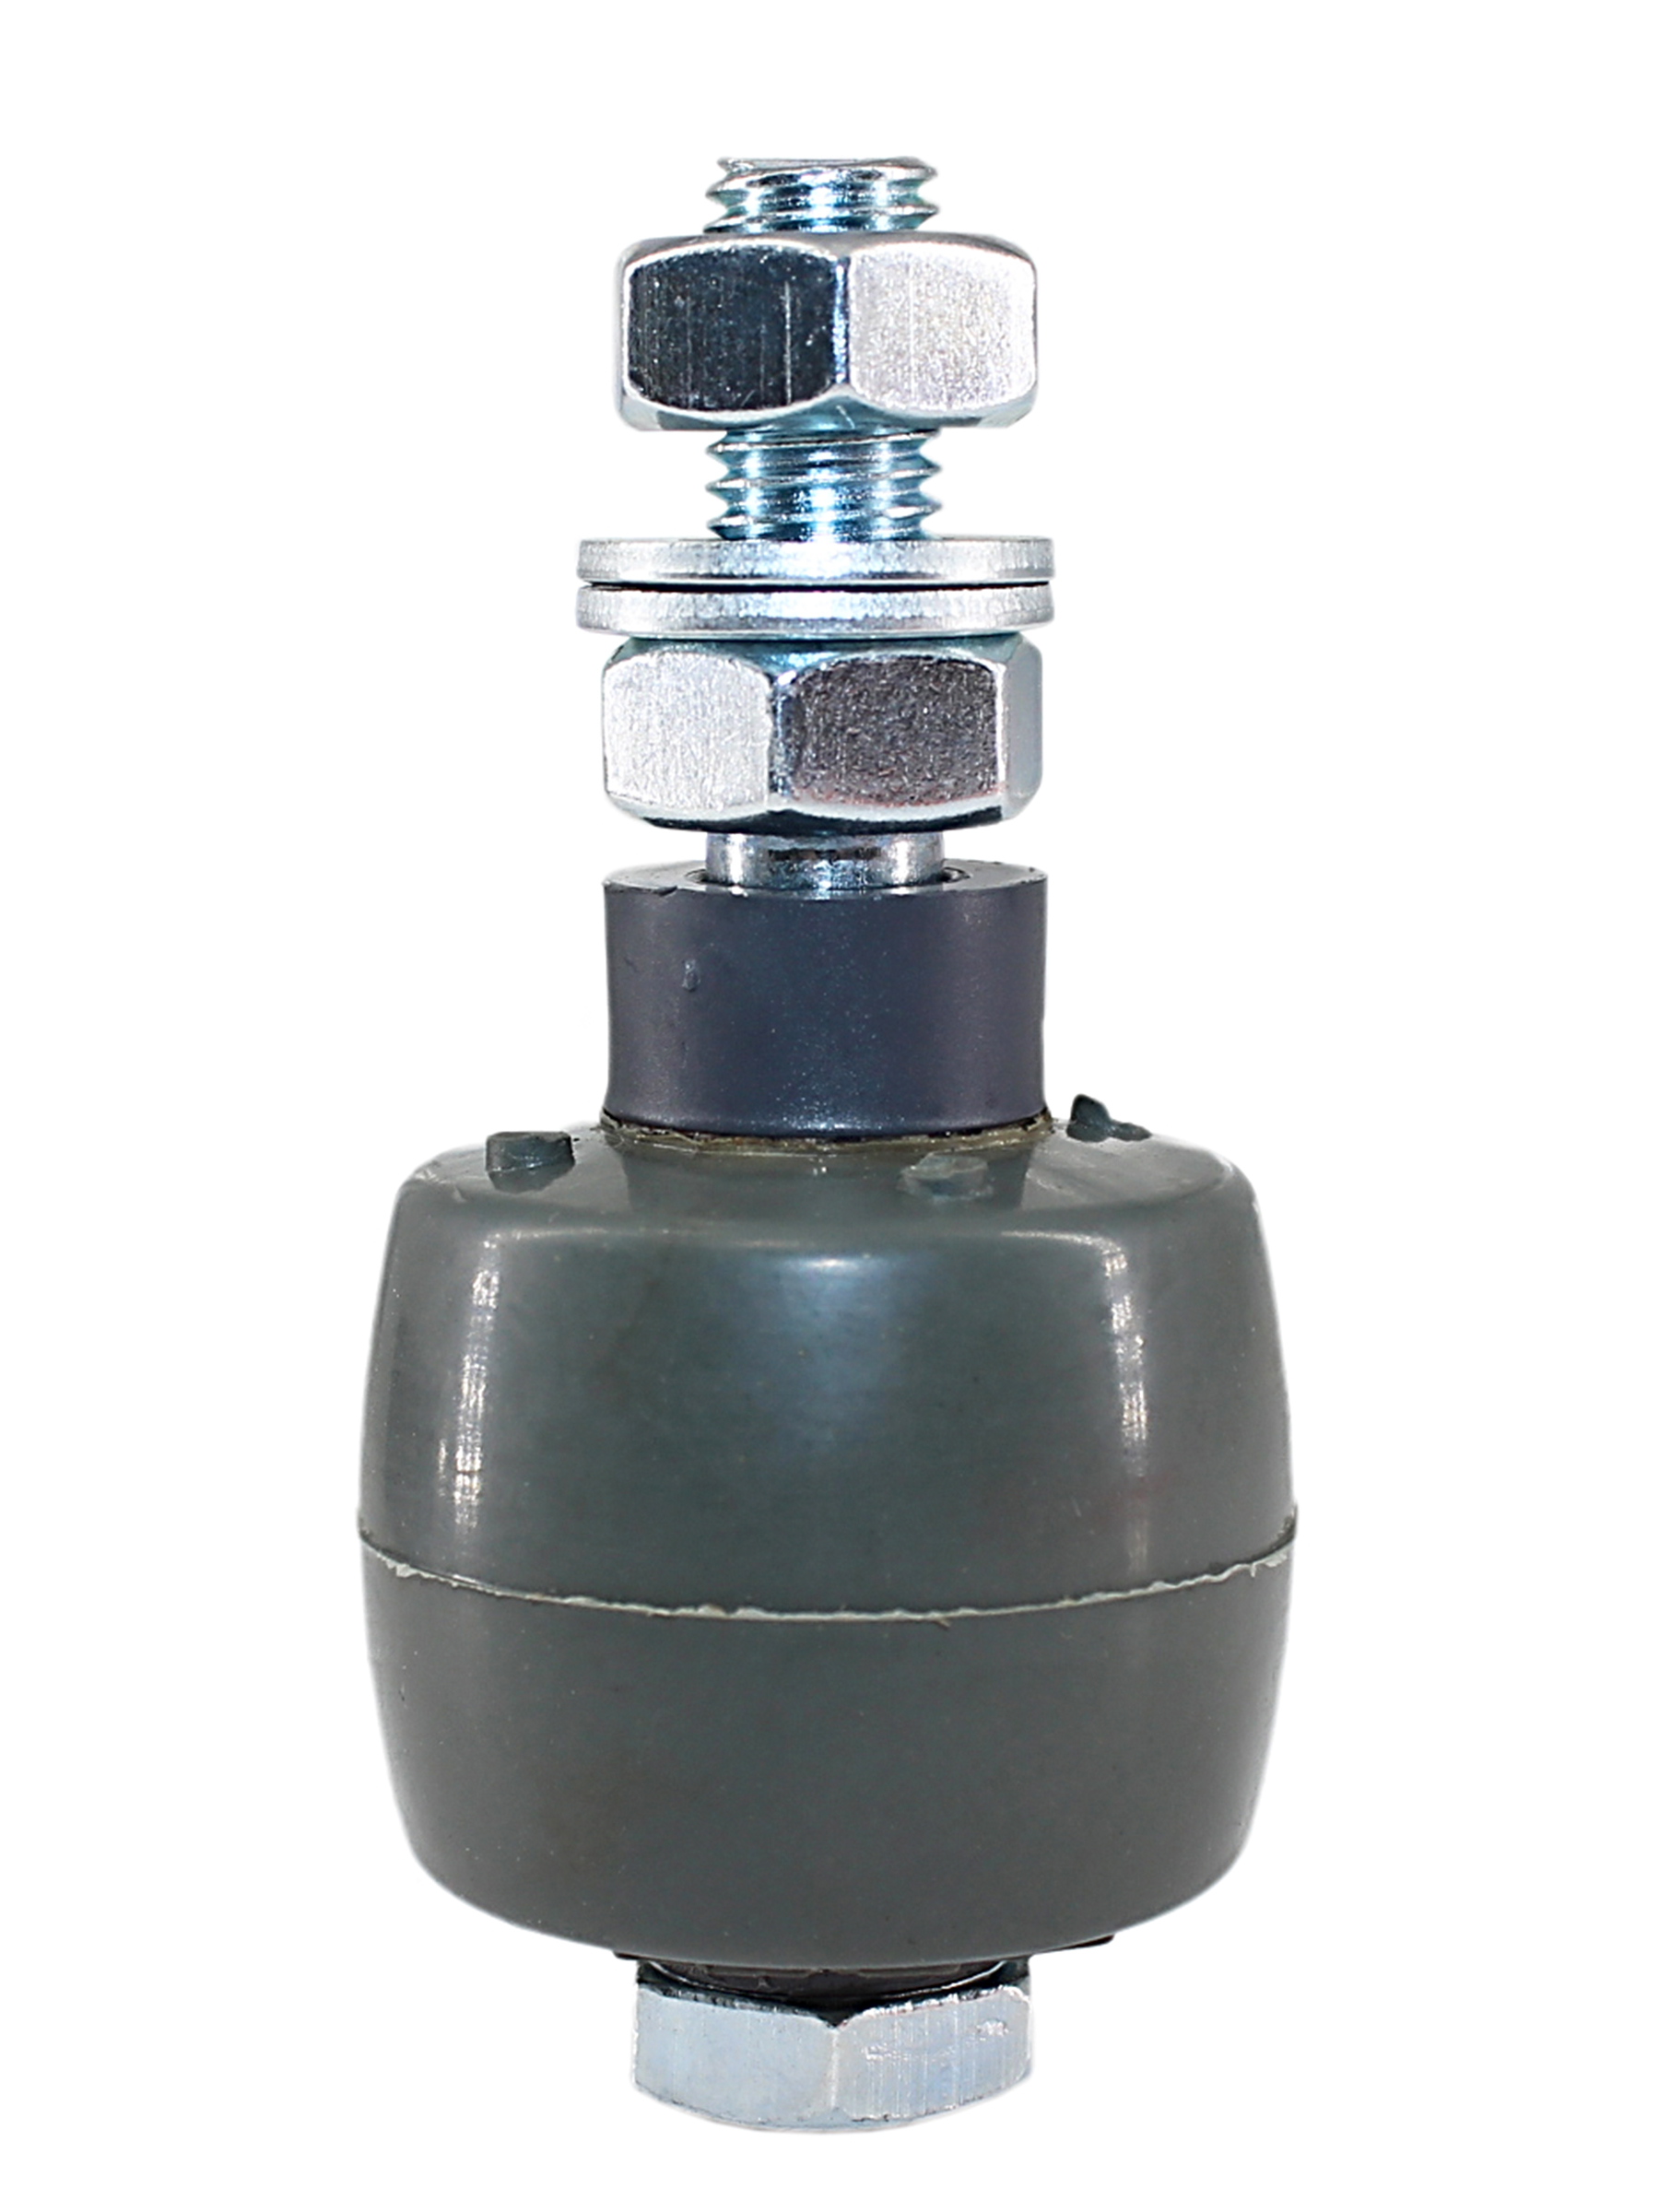 Ролик резиновый Ролтэк с набором крепежа (стандарт) (арт. 040)